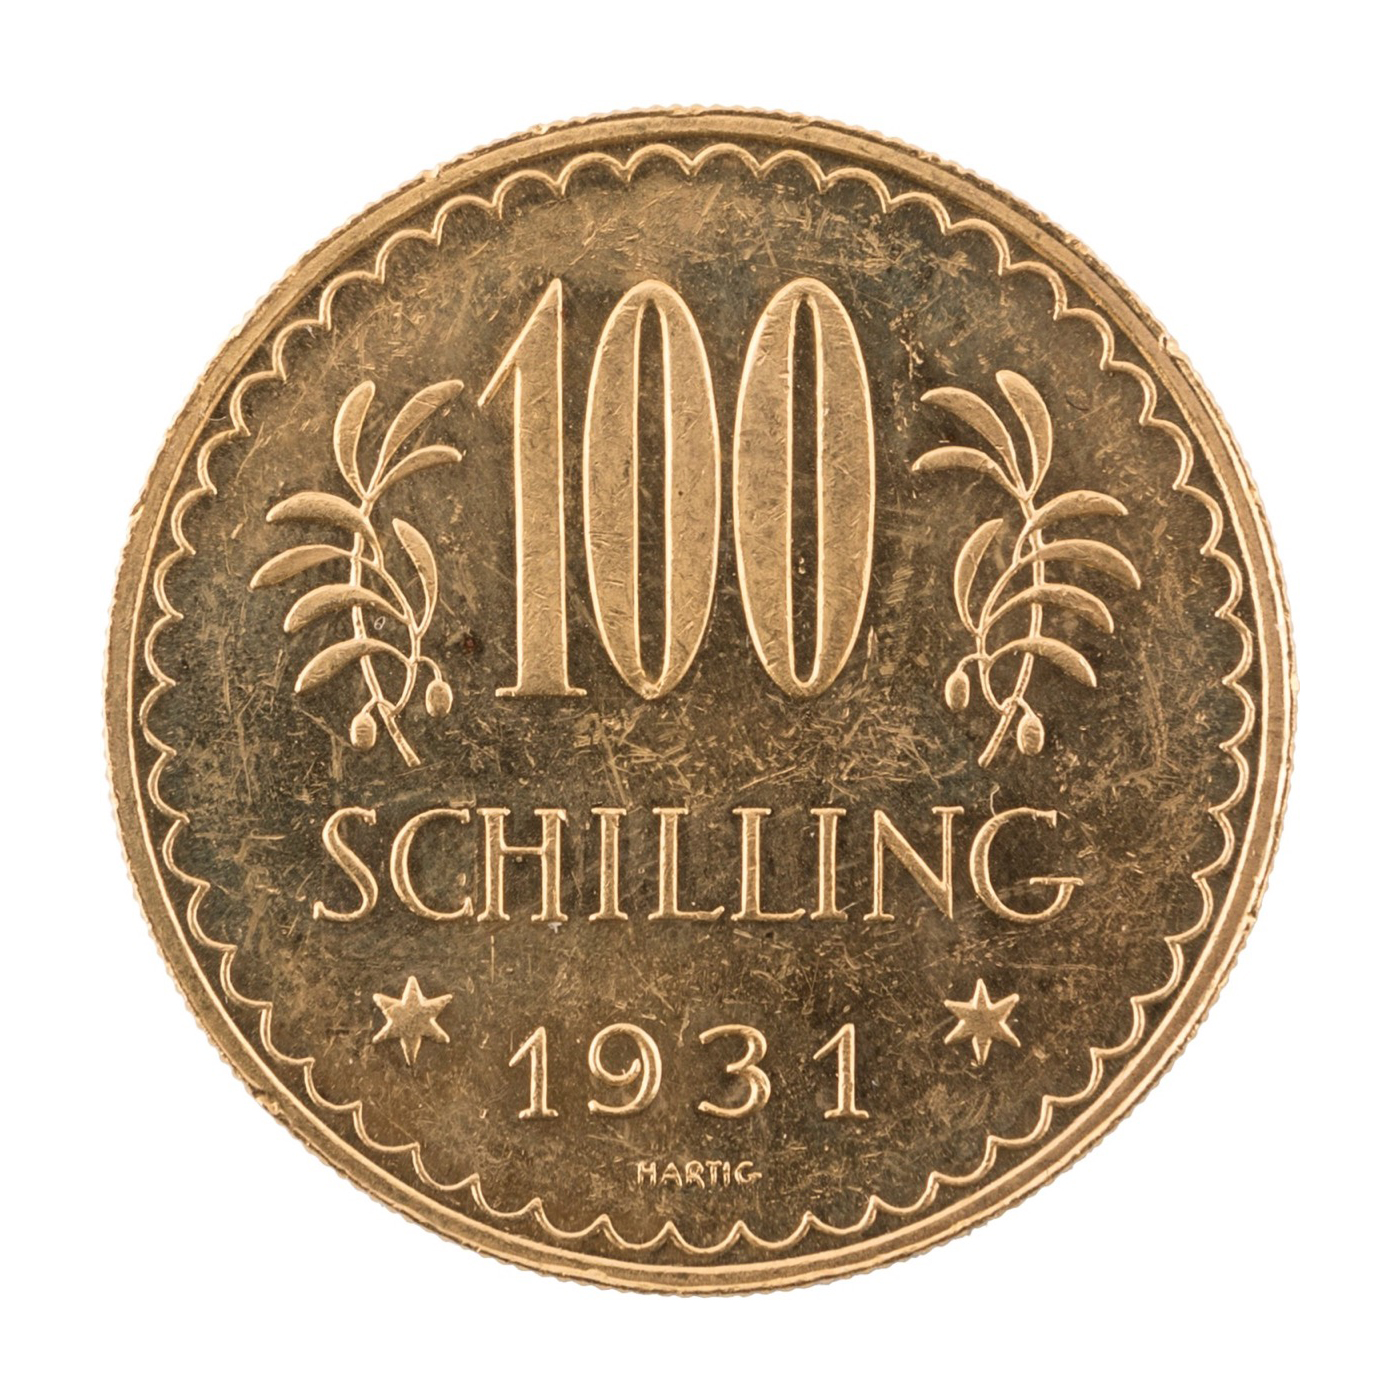 AUSTRIA. Repubblica - 100 scellini 1931. KM 2841. ORO, gr. 23,48. SPL/FDC - - Image 2 of 2